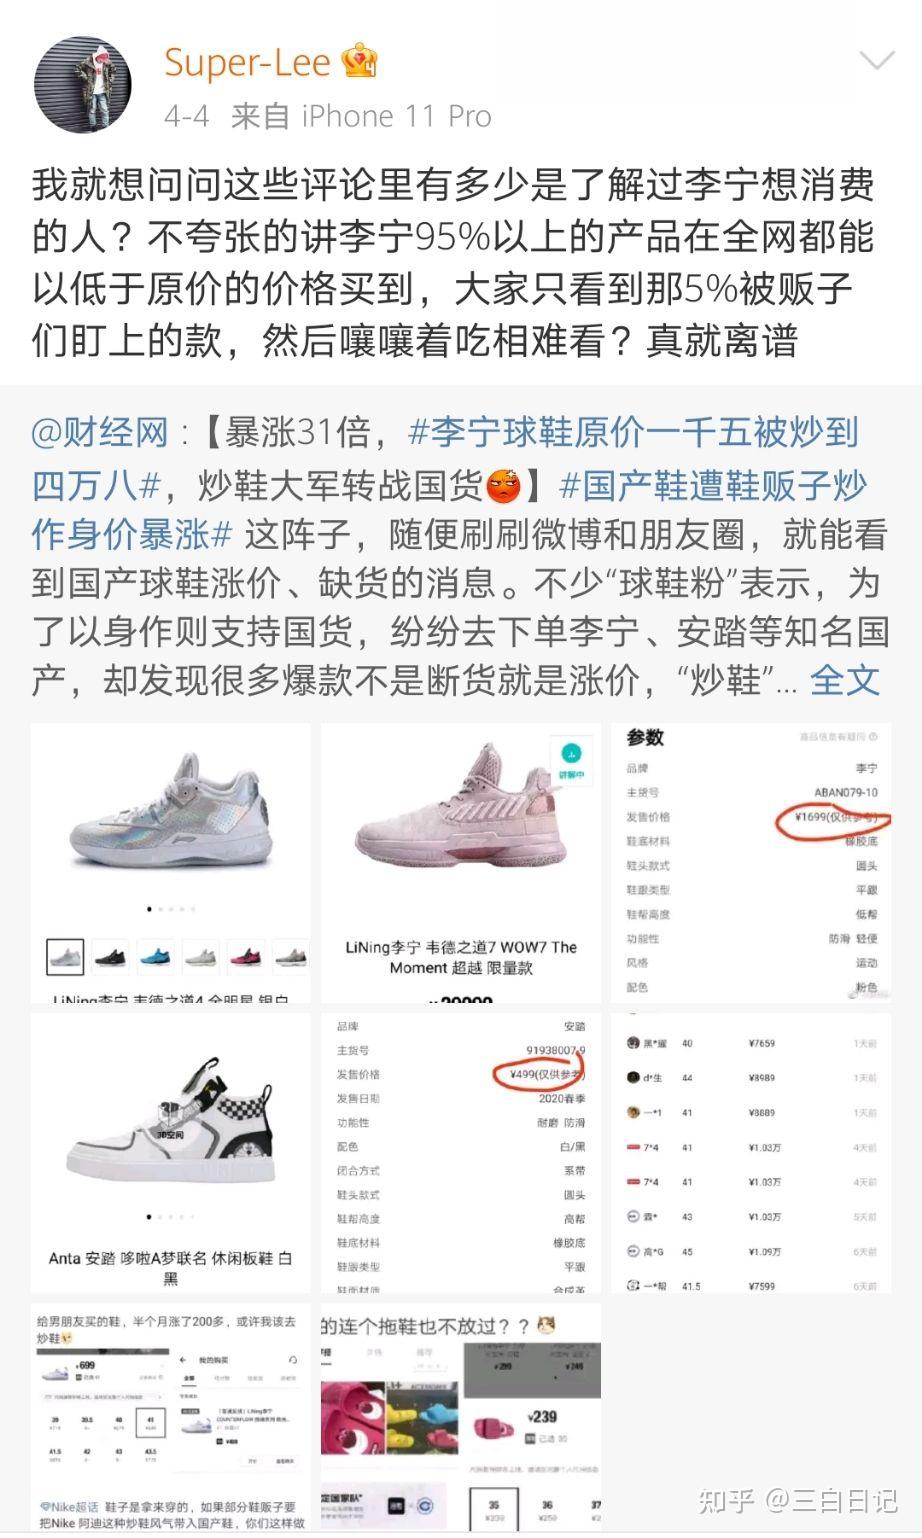 国货李宁回应「天价鞋」问题:不想与炒鞋圈有任何关联